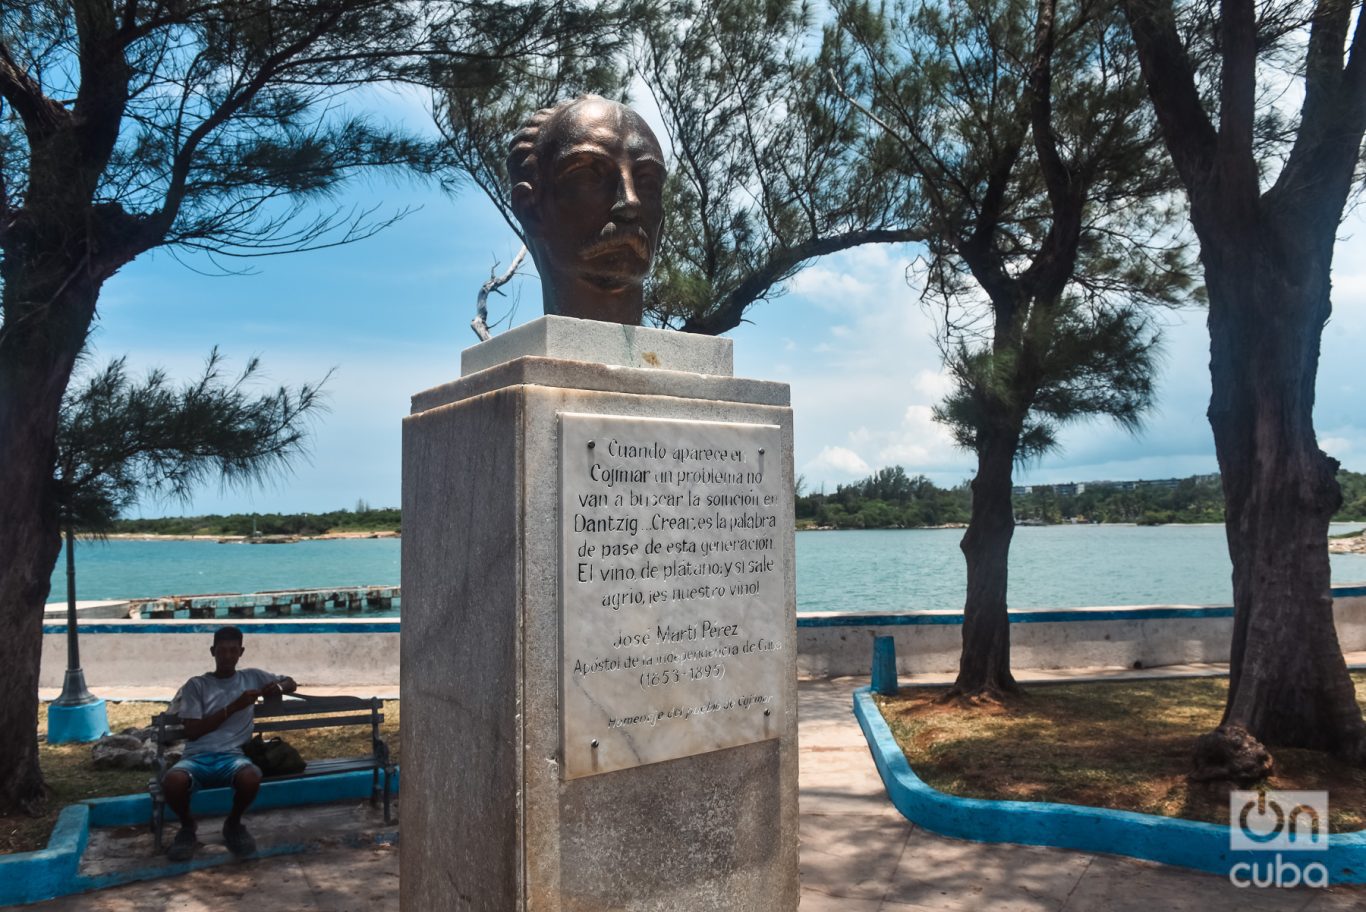 Monumento a José Martí en el parque de Cojímar. Foto: Kaloian.